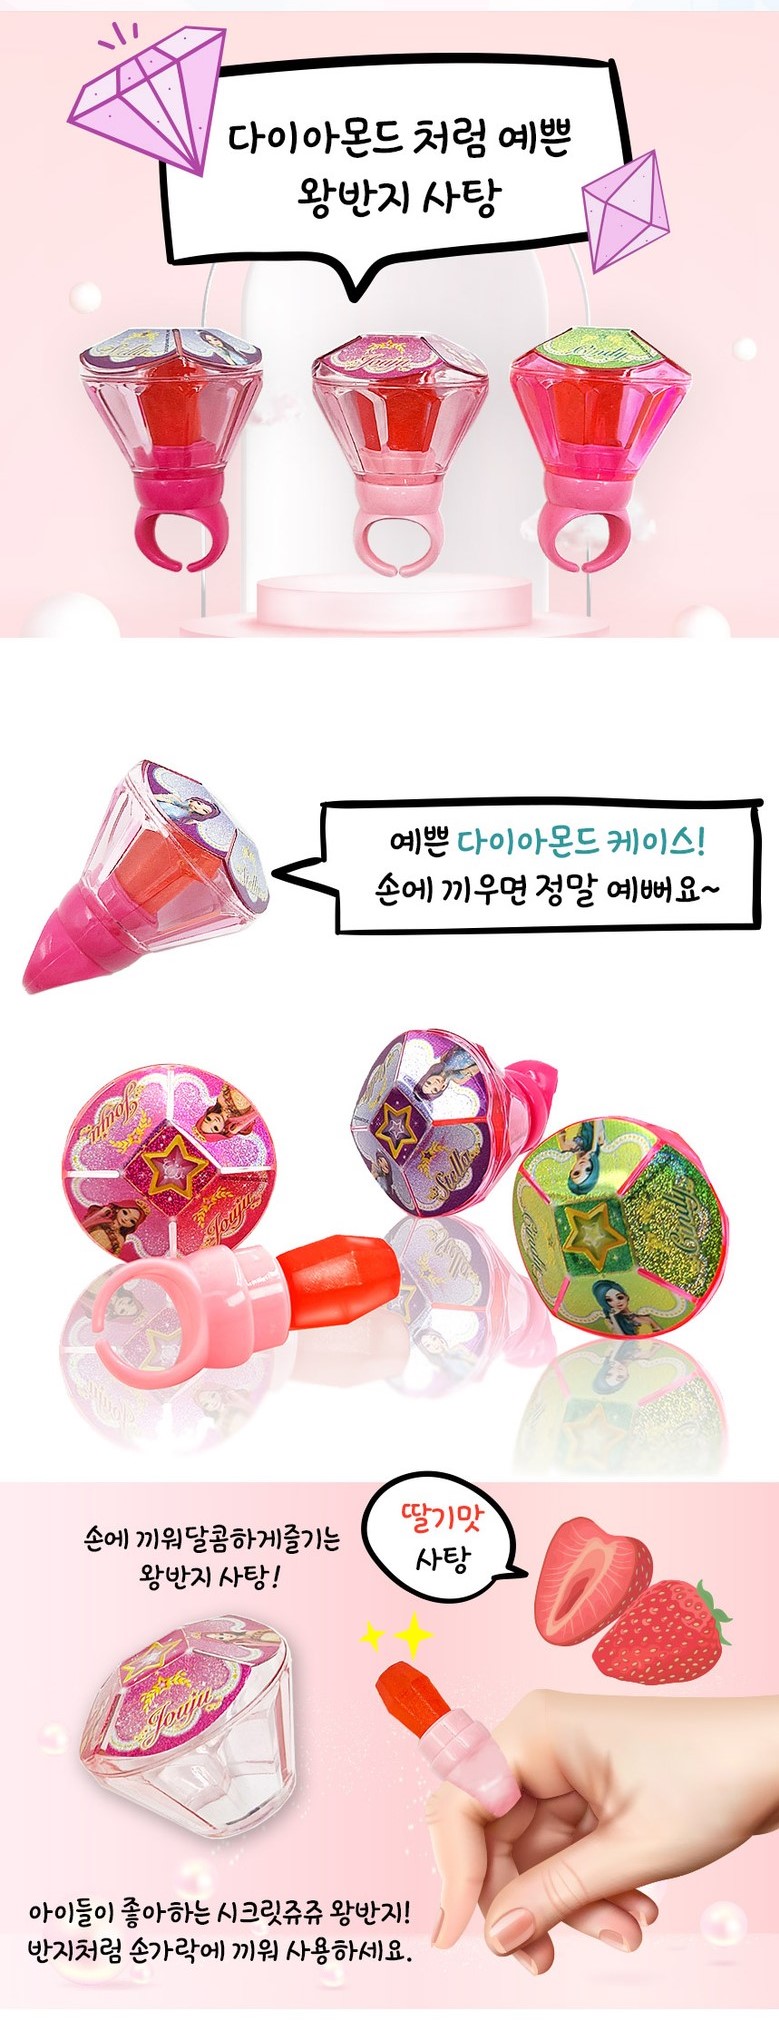 韓國食品-[시크릿쥬쥬] 왕반지사탕 6g